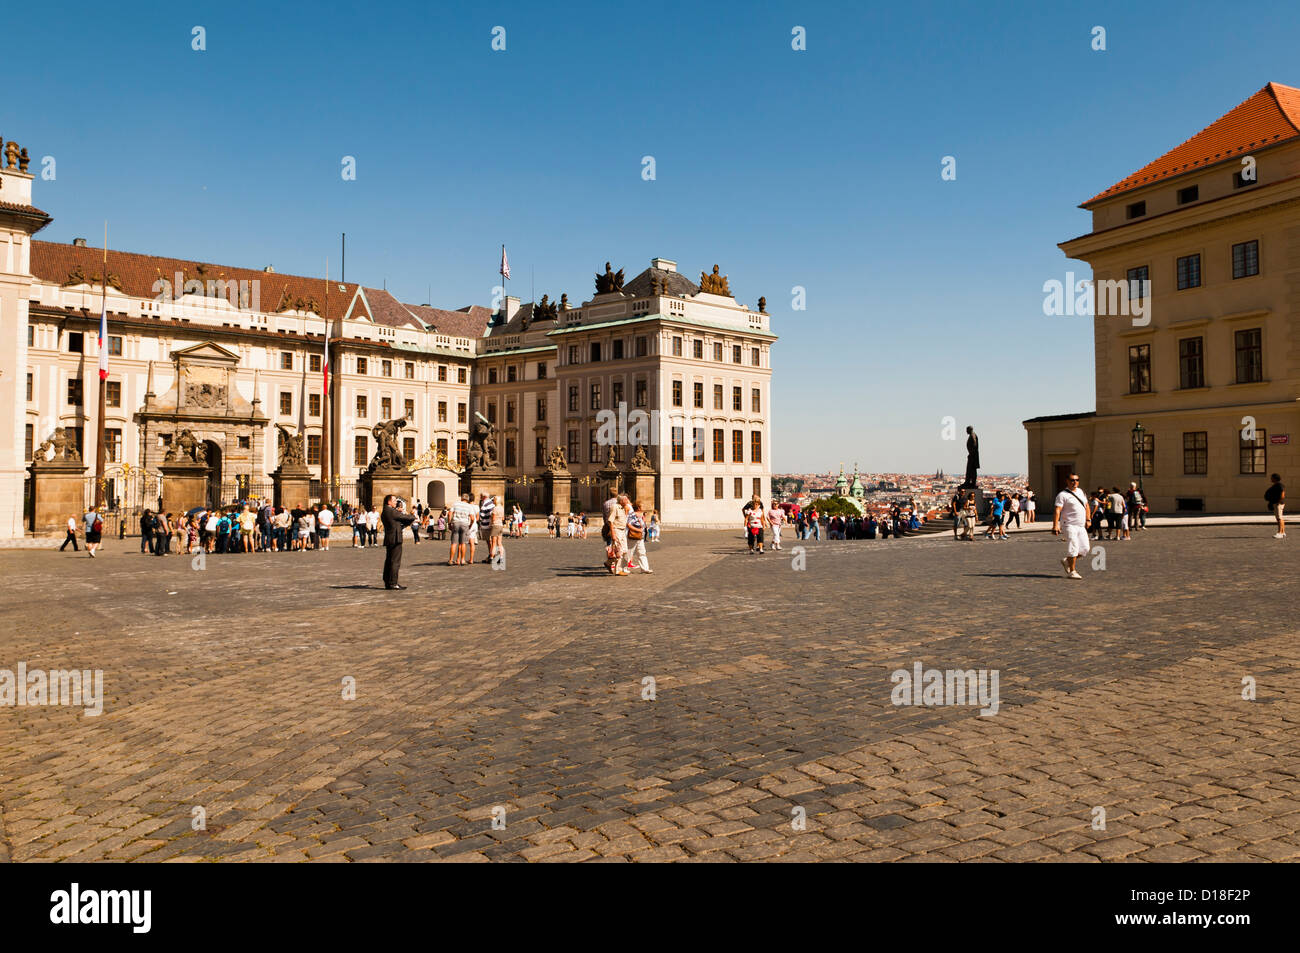 historischen Zentrum von Prag - Hradschin quadratisch Stockfoto